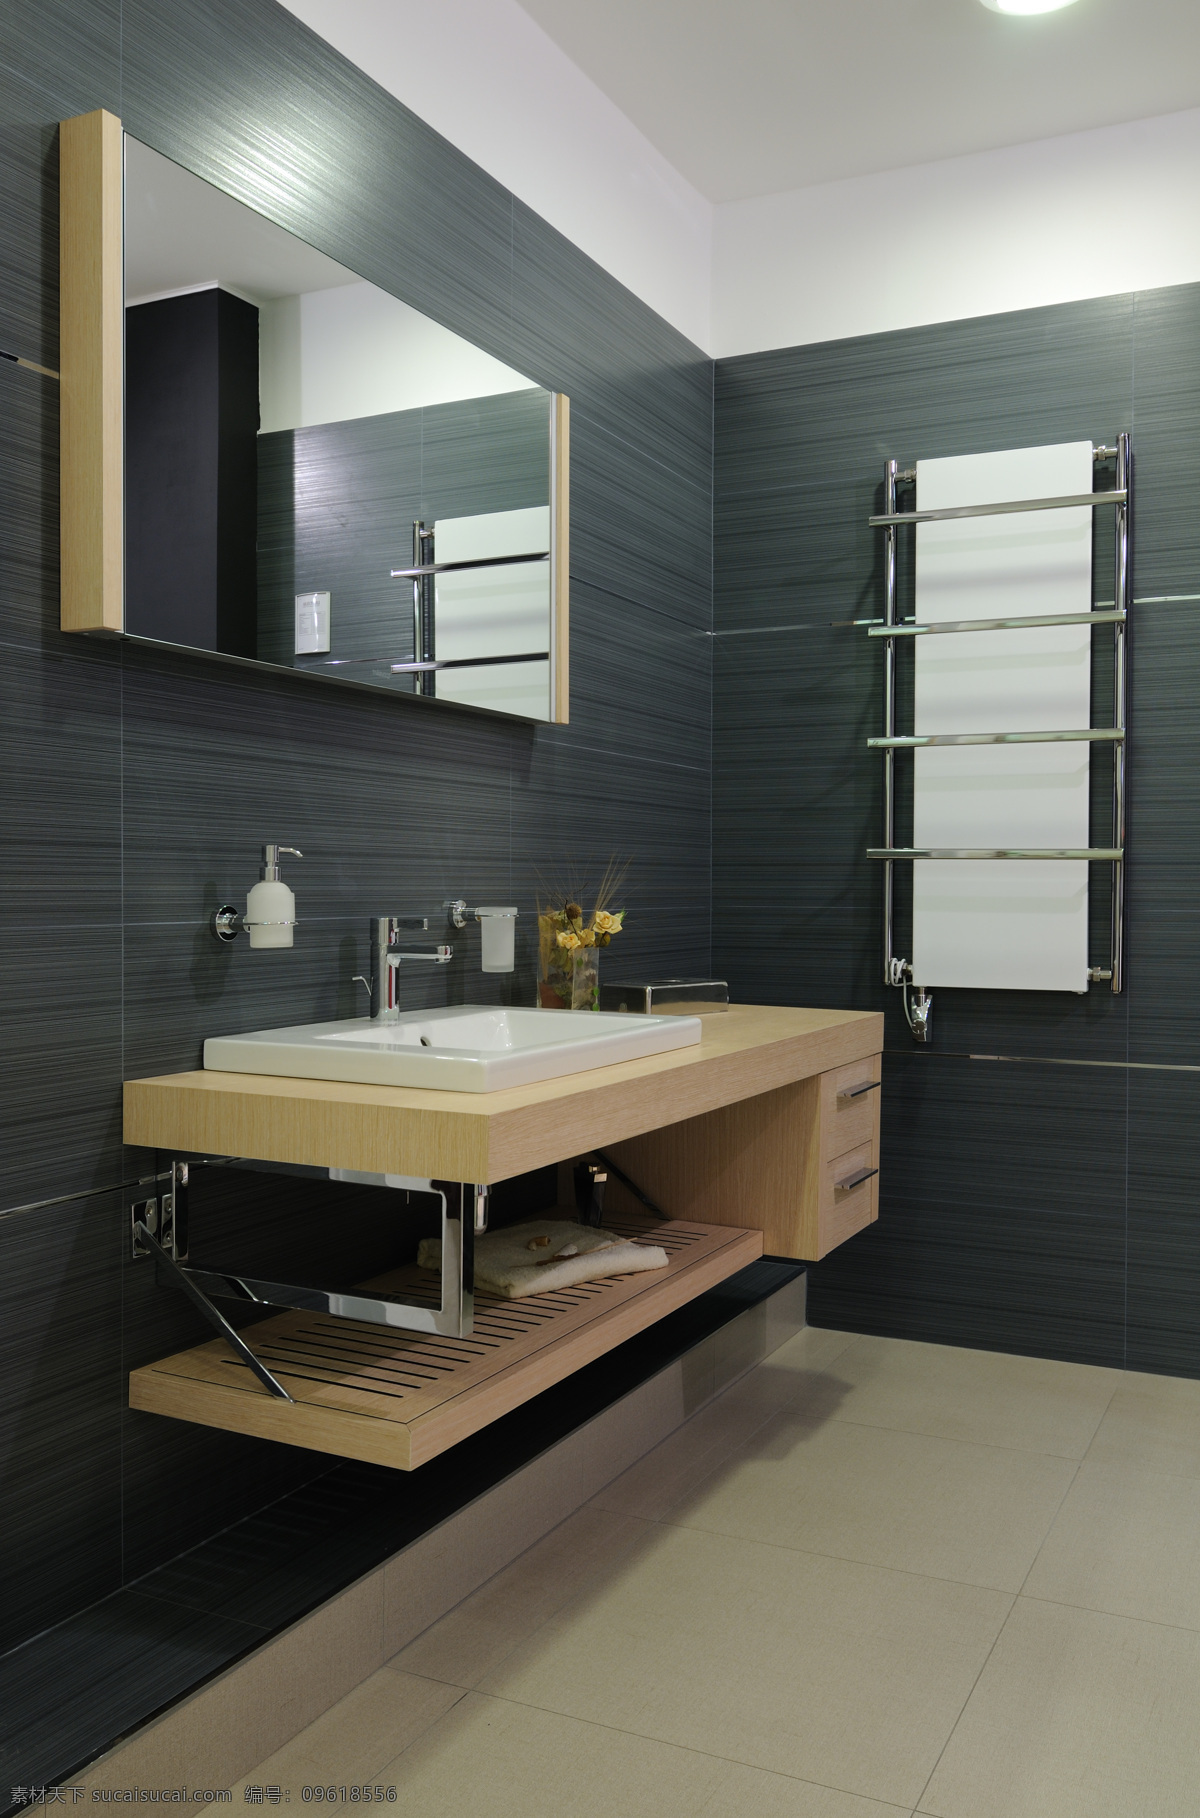 浴室 瓷砖 镜子 卫浴 洗水间 环境设计 室内设计 黑色